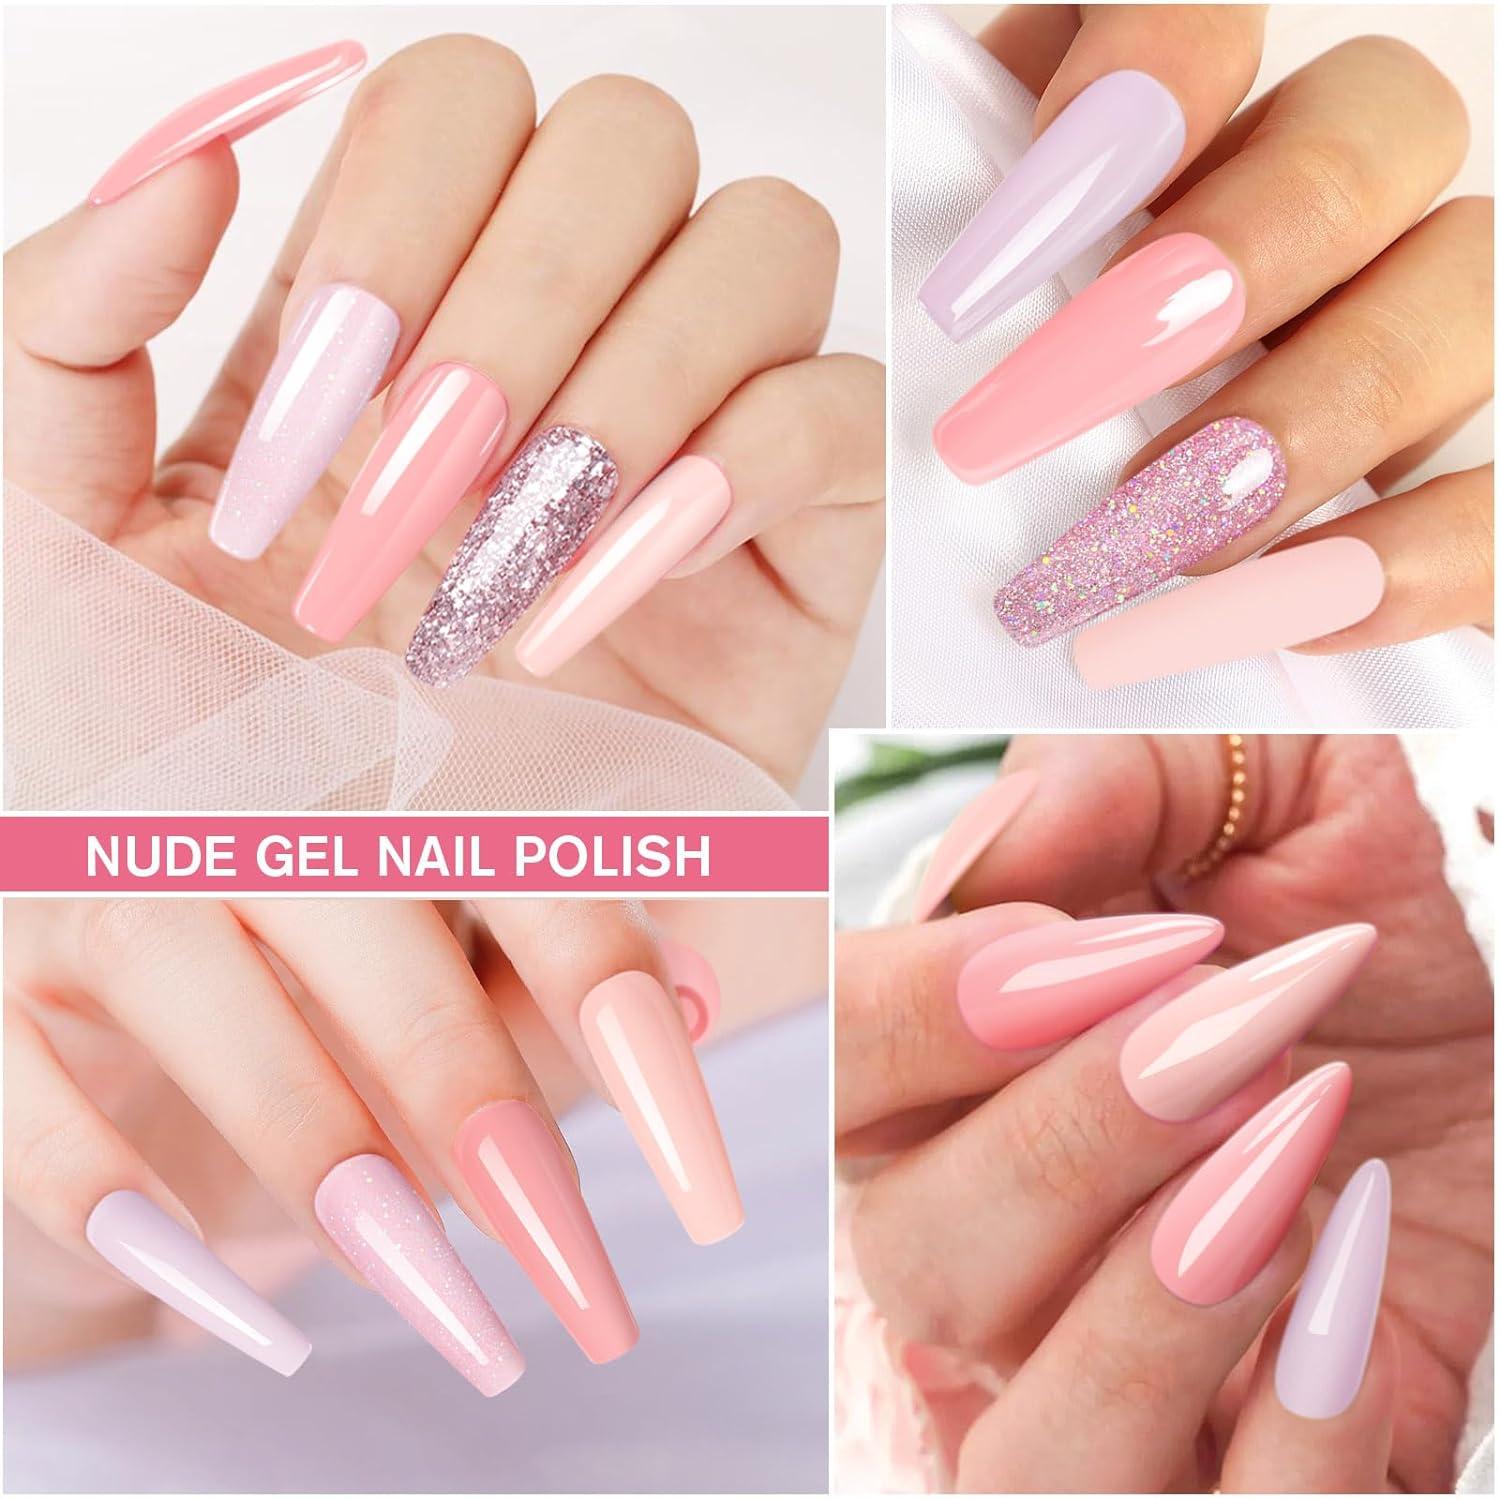 Light Baby Pink & White Nail Art - O2 Nails India